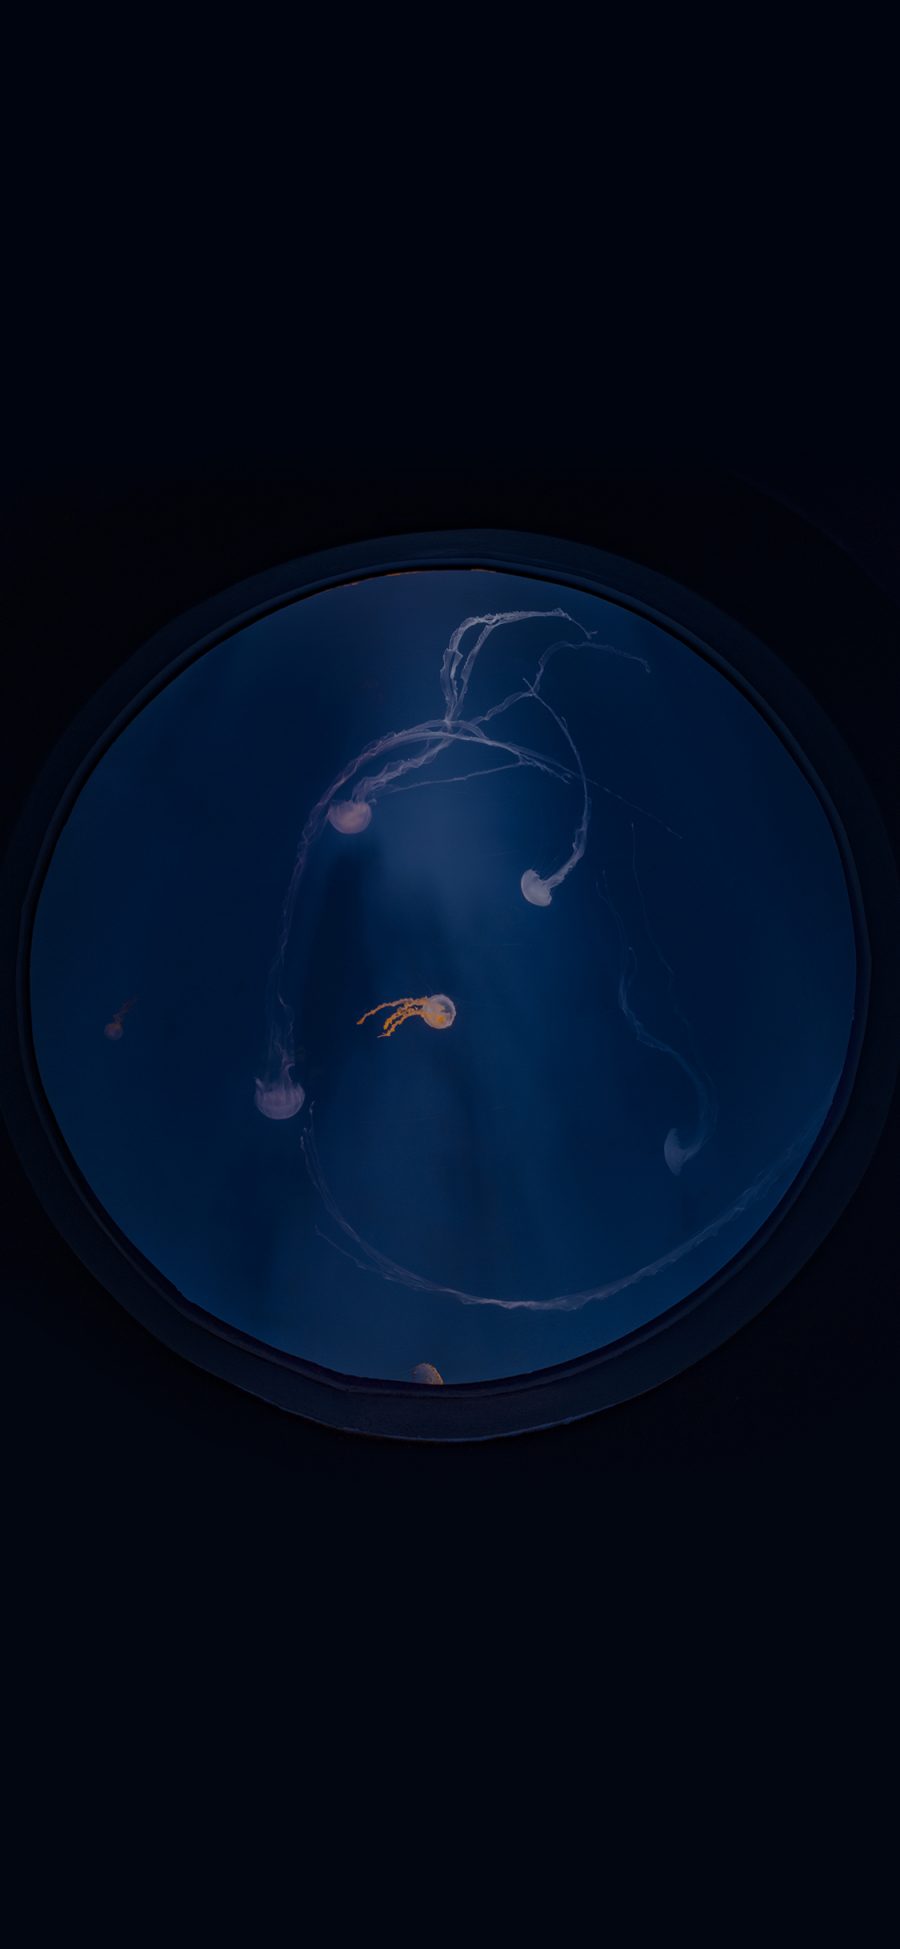 [2436×1125]水母 水族 养殖 蓝色 海洋生物 圆形 苹果手机壁纸图片